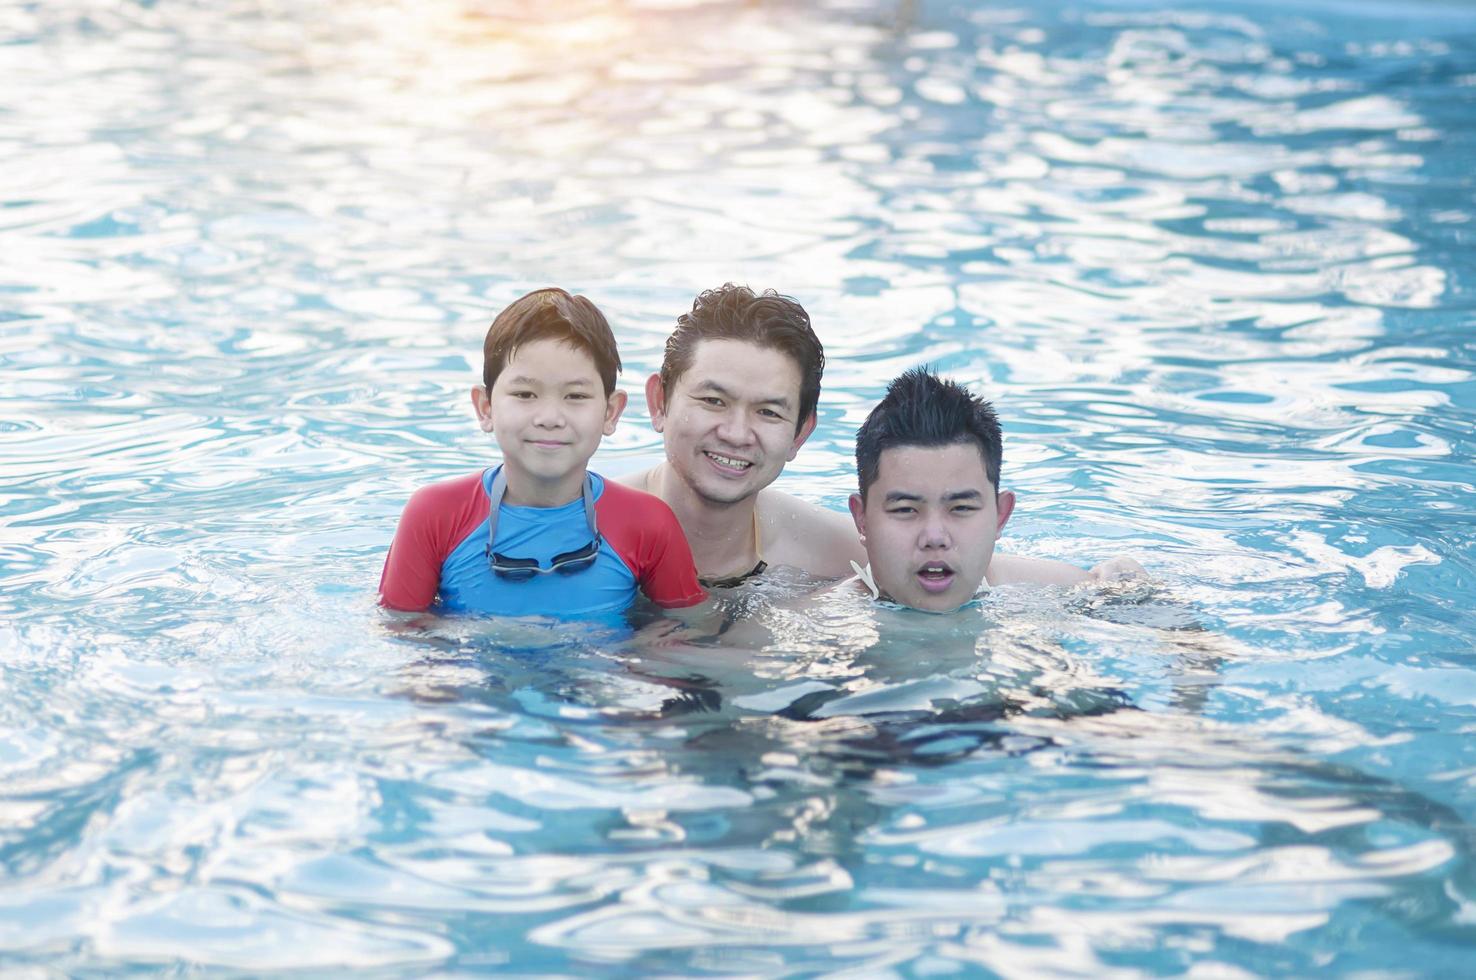 père et ses deux fils jouent dans une piscine d'eau claire - concept de temps de jeu en famille heureuse photo